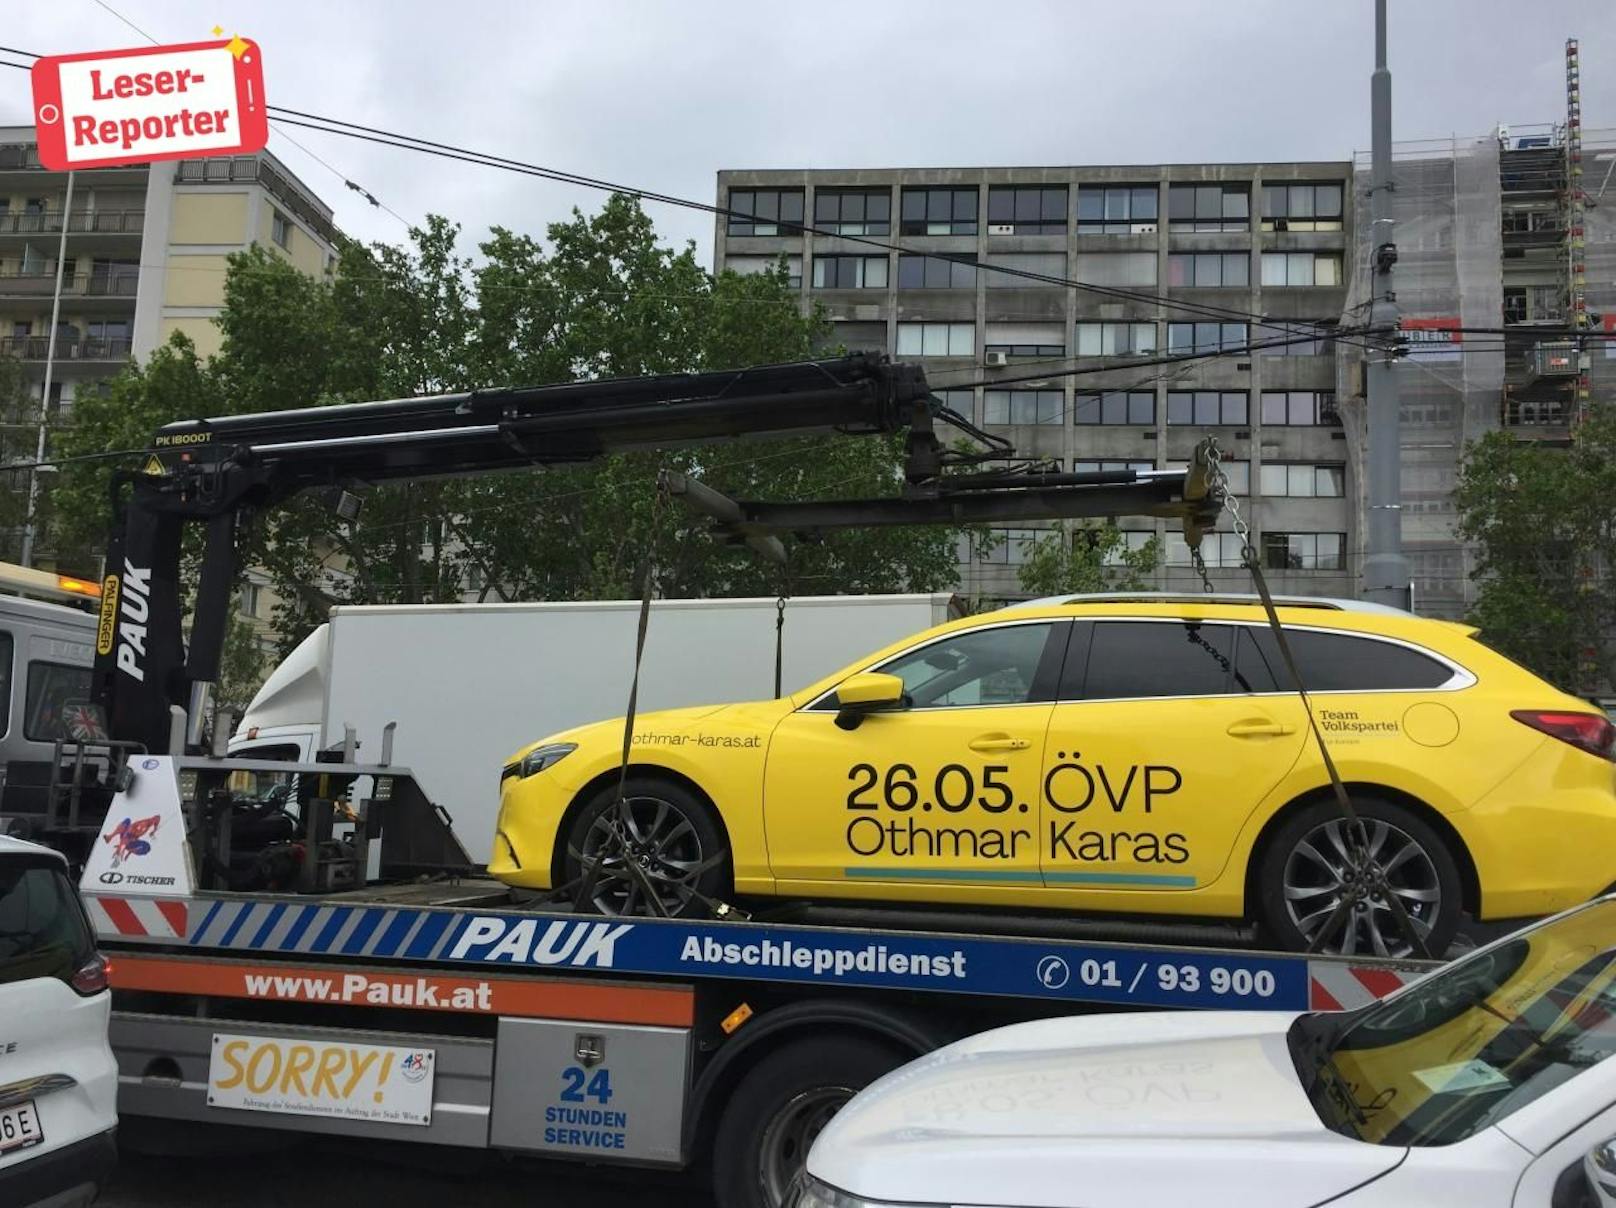 Das EU-Wahl-Auto der ÖVP wurde am Donnerstag abgeschleppt.